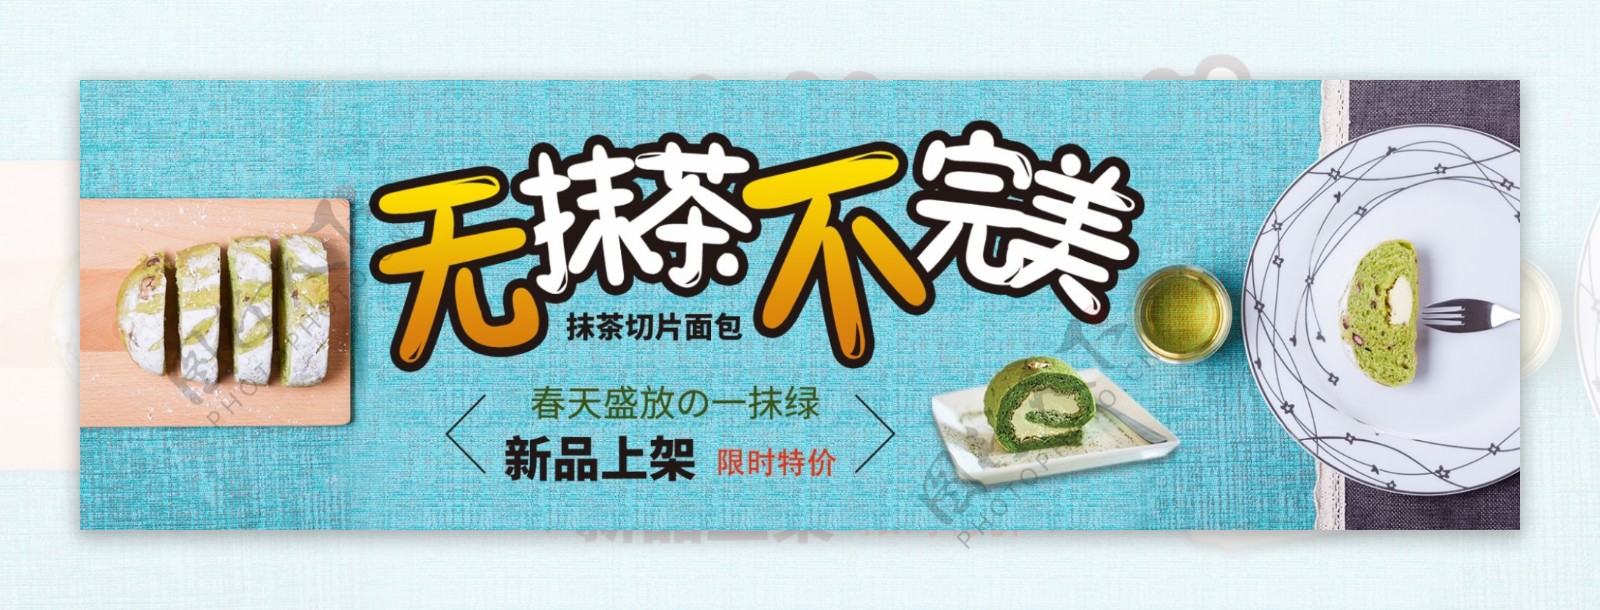 抹茶蛋糕淘宝促销banner设计